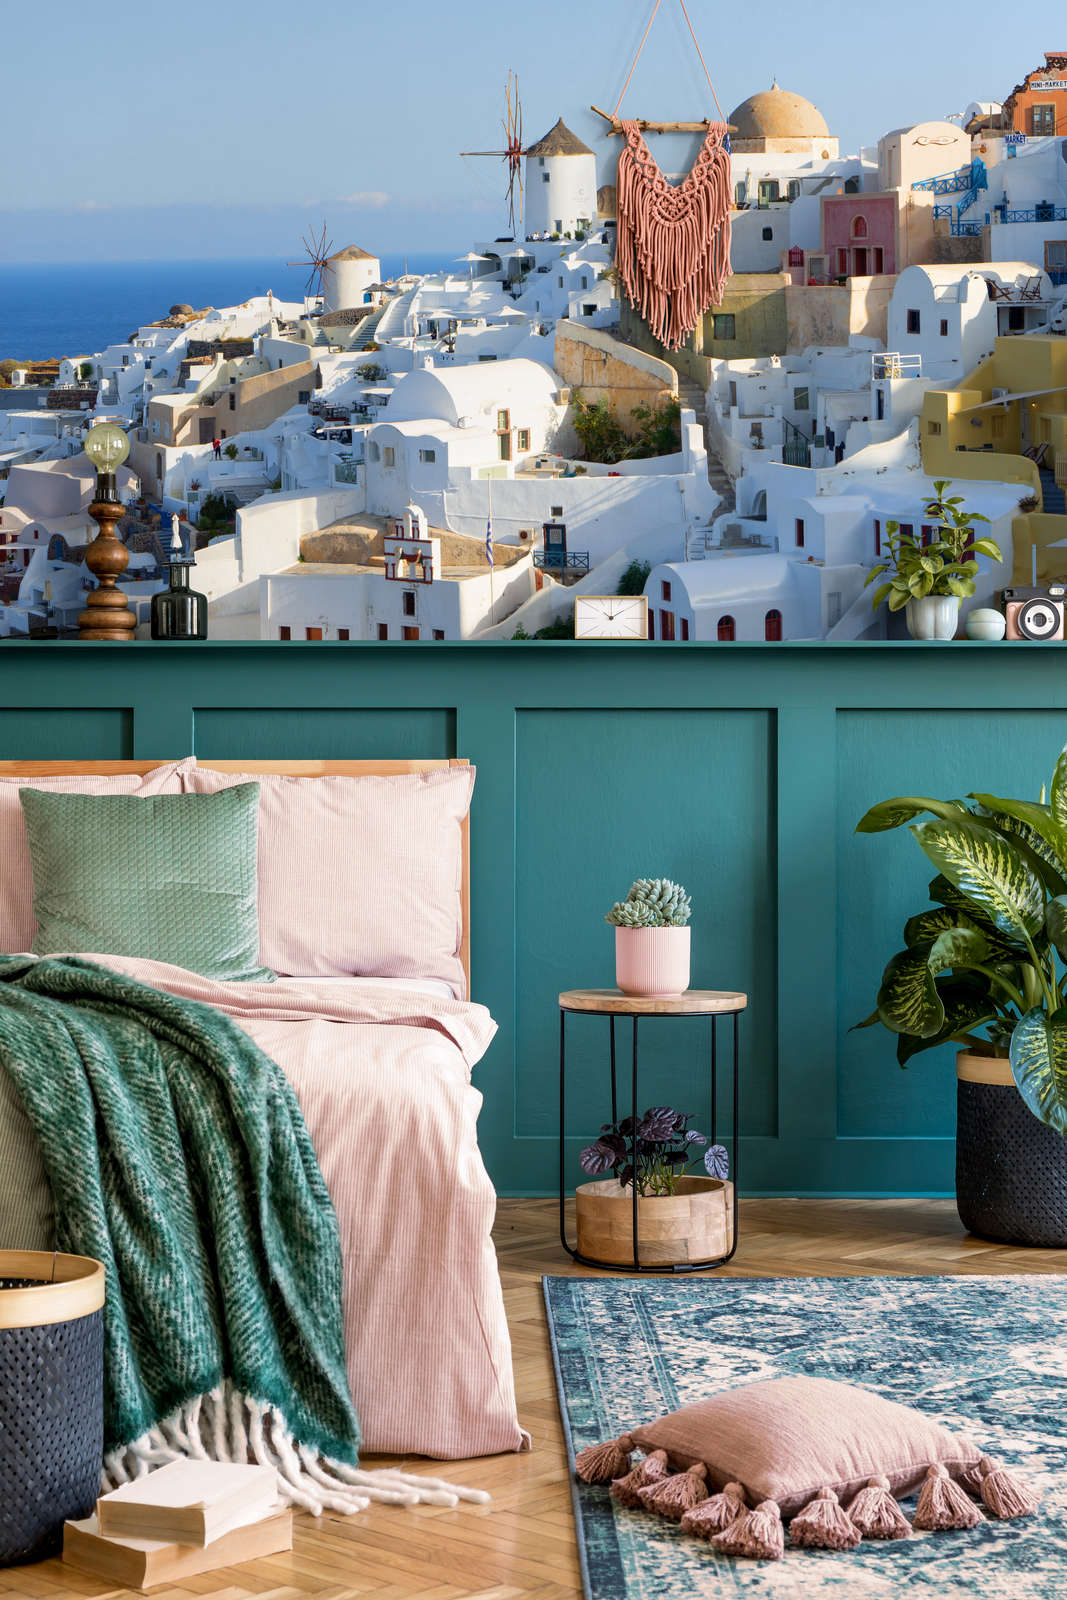             Fotomural Callejones de Santorini - Nácar liso no tejido
        